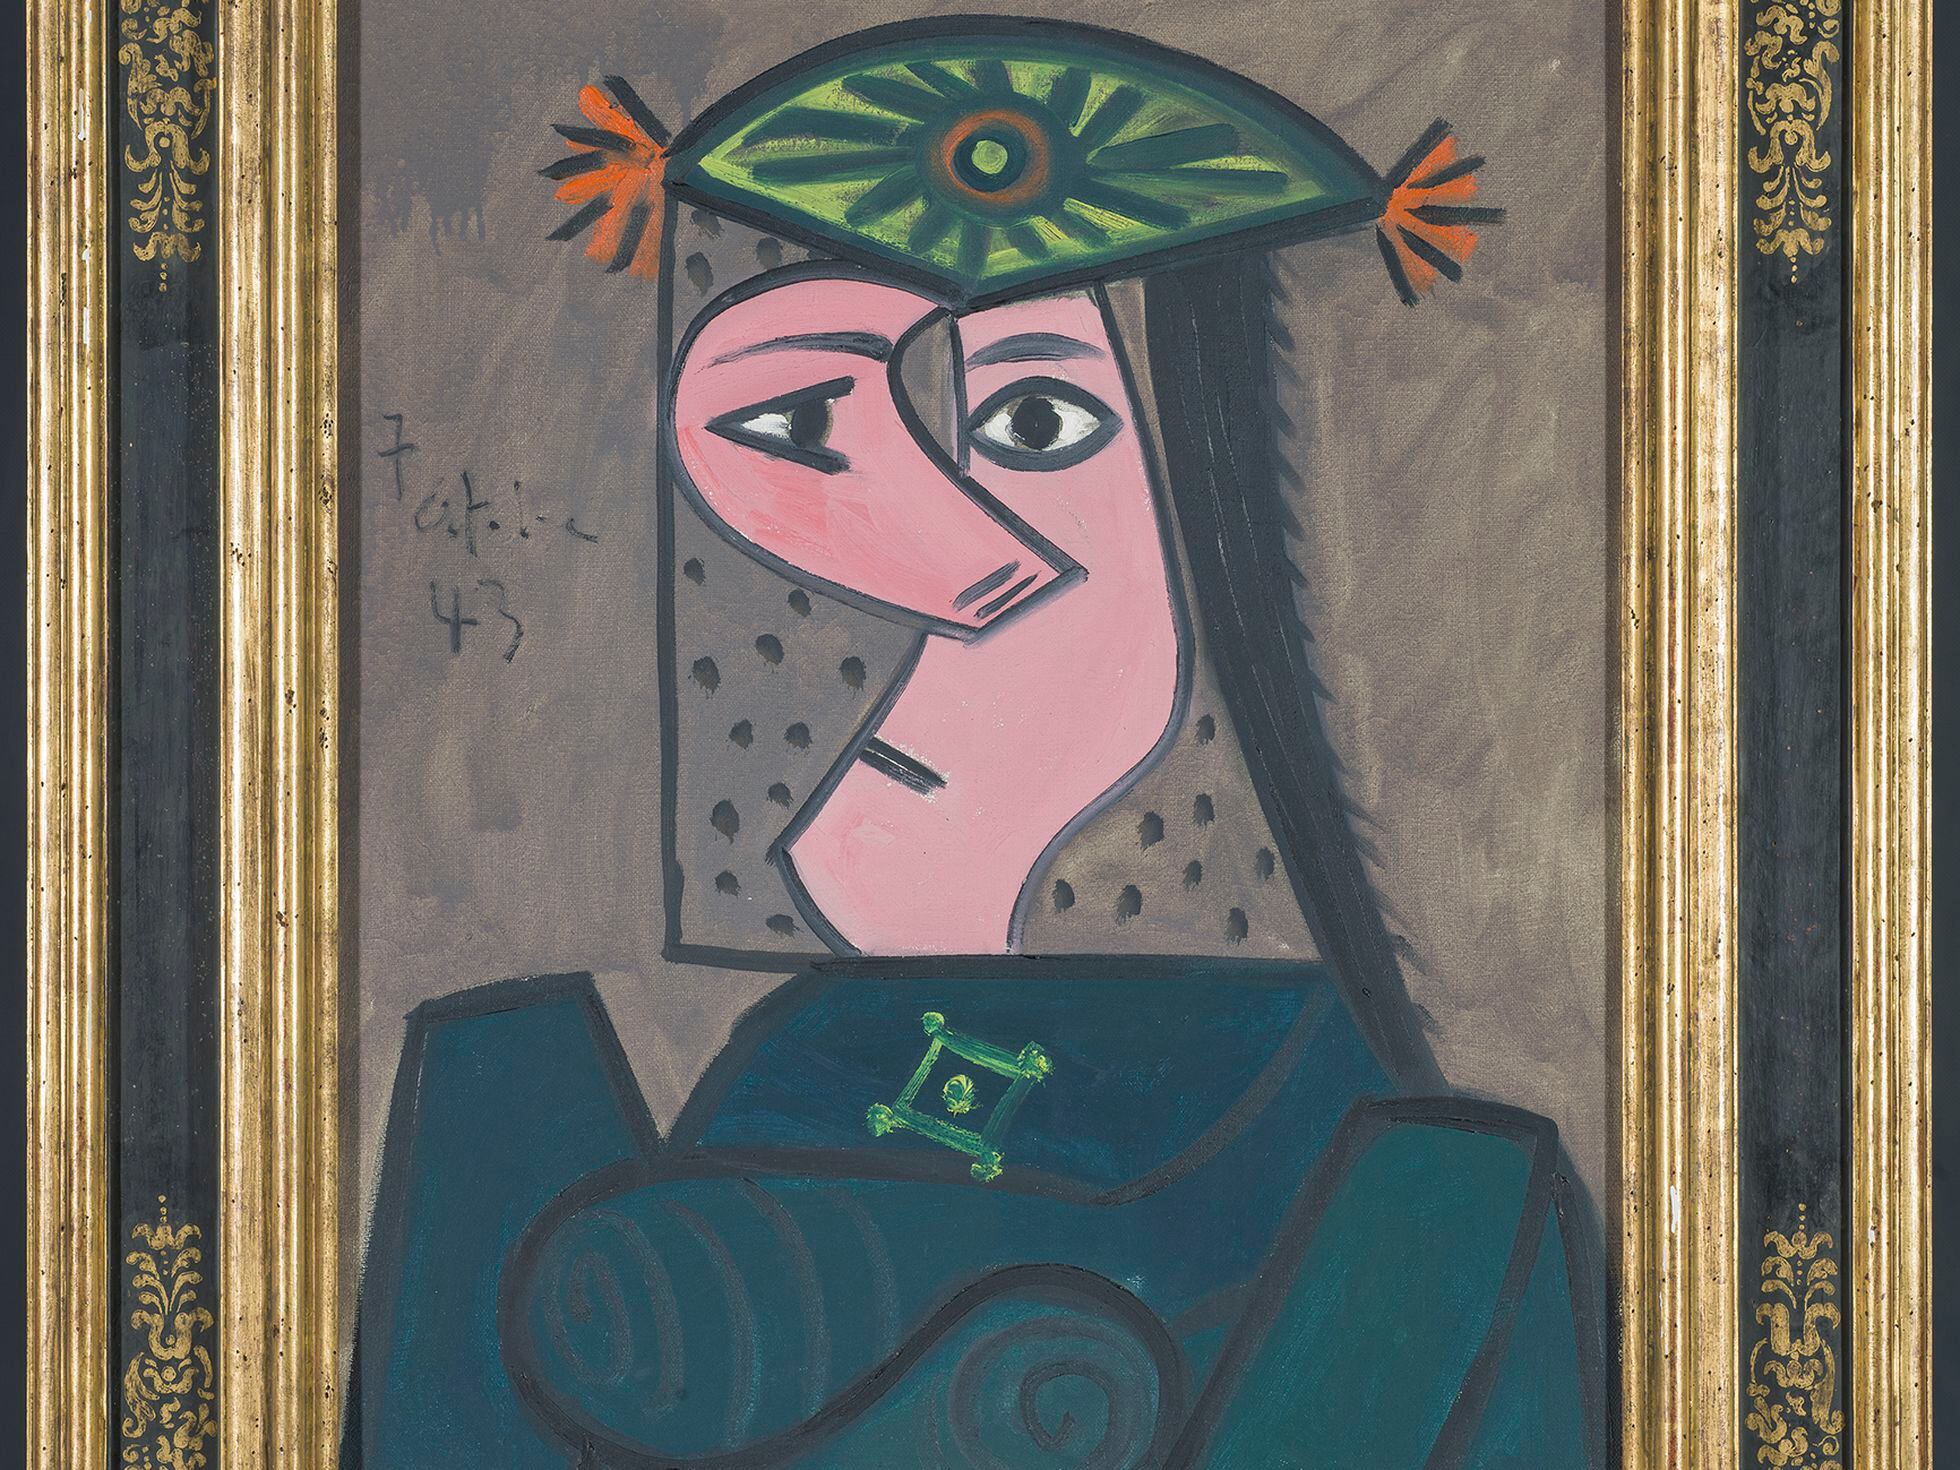 Picasso me parece arte aberrante y sobrevalorado